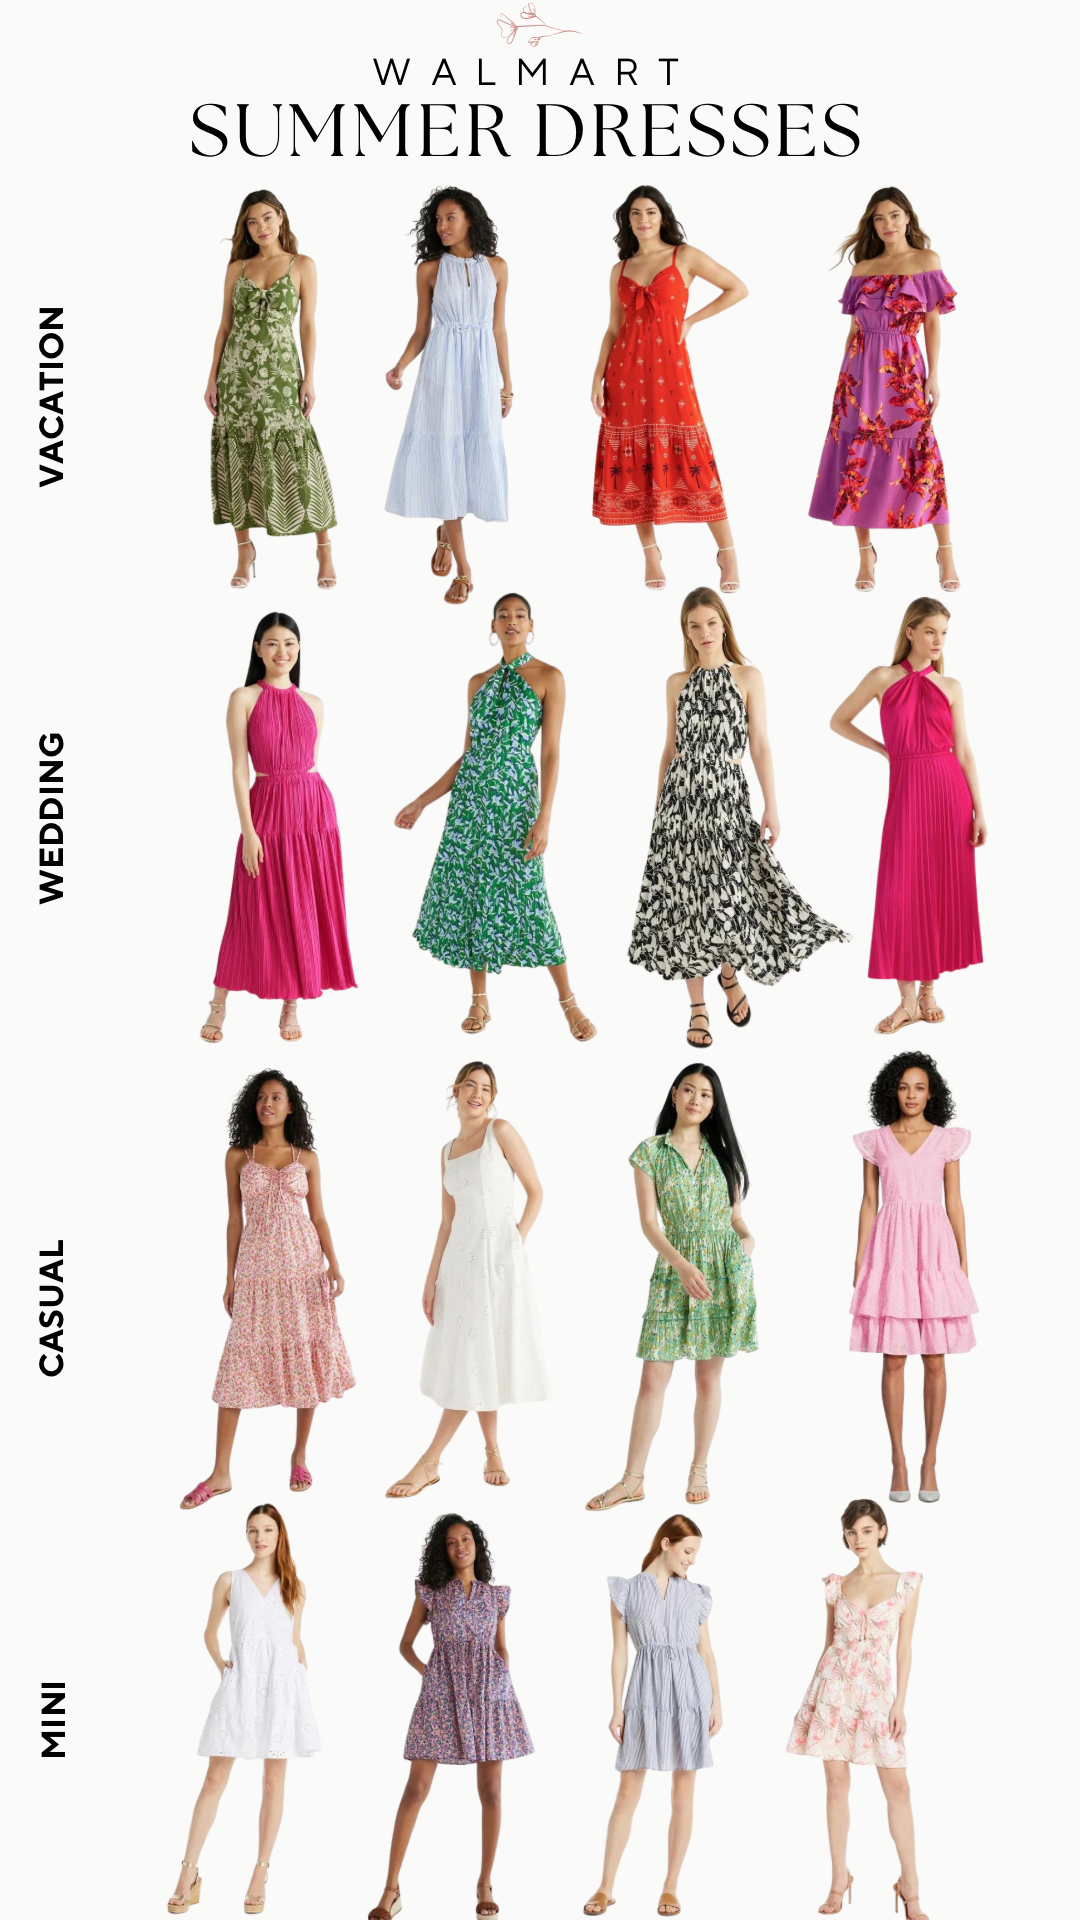 Walmart Cotton Summer Dresses for Women - Dresses at Walmart In-Store - Affordable Summer Dresses from Walmart 2024